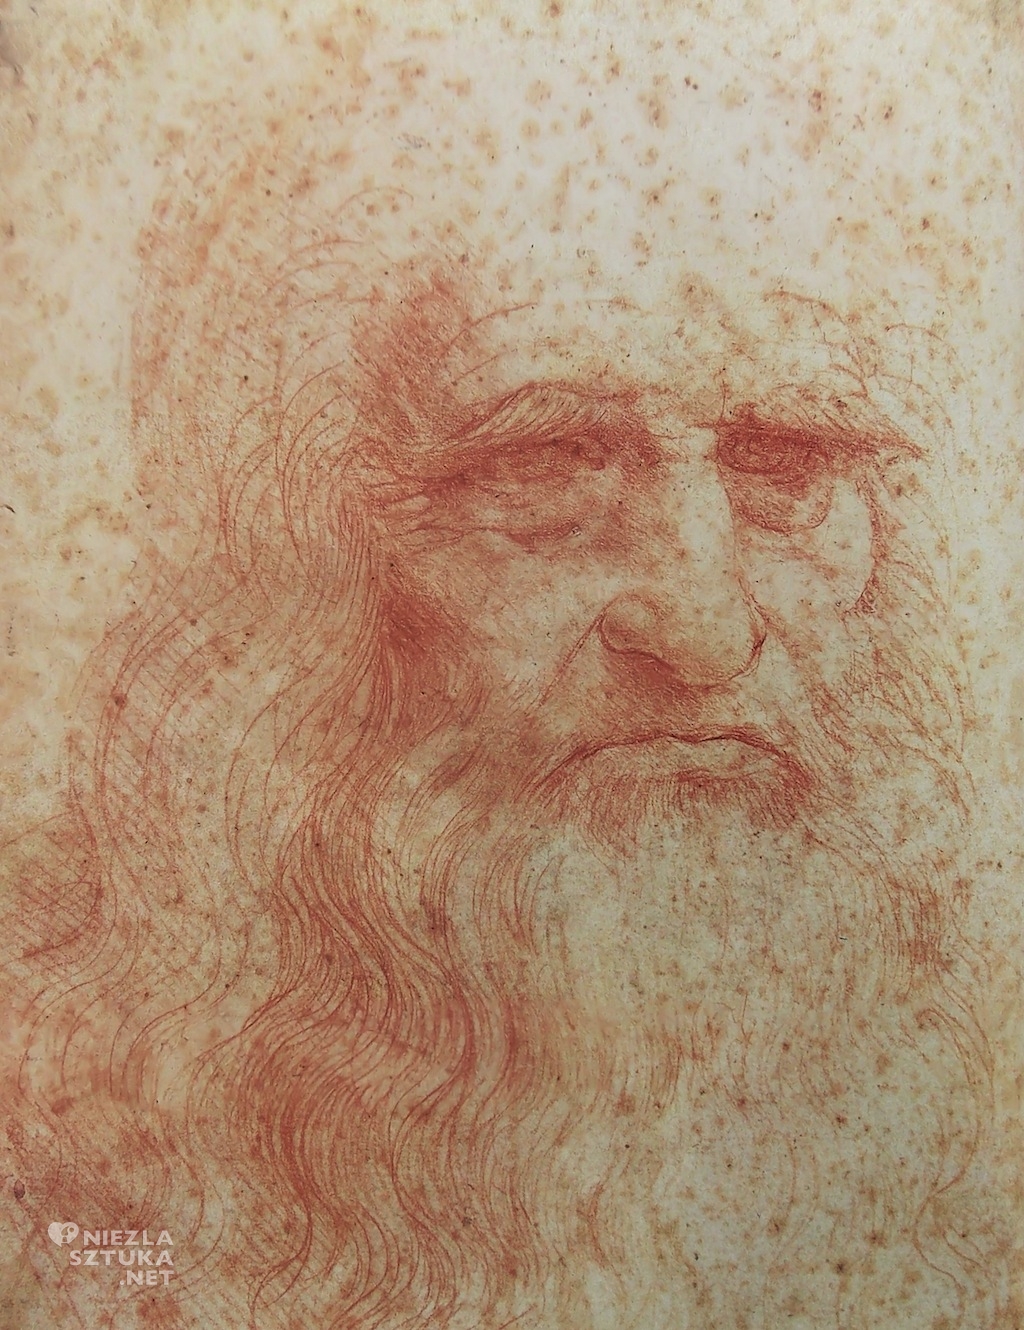 Leonardo da Vinci Autoportret, Niezła sztuka